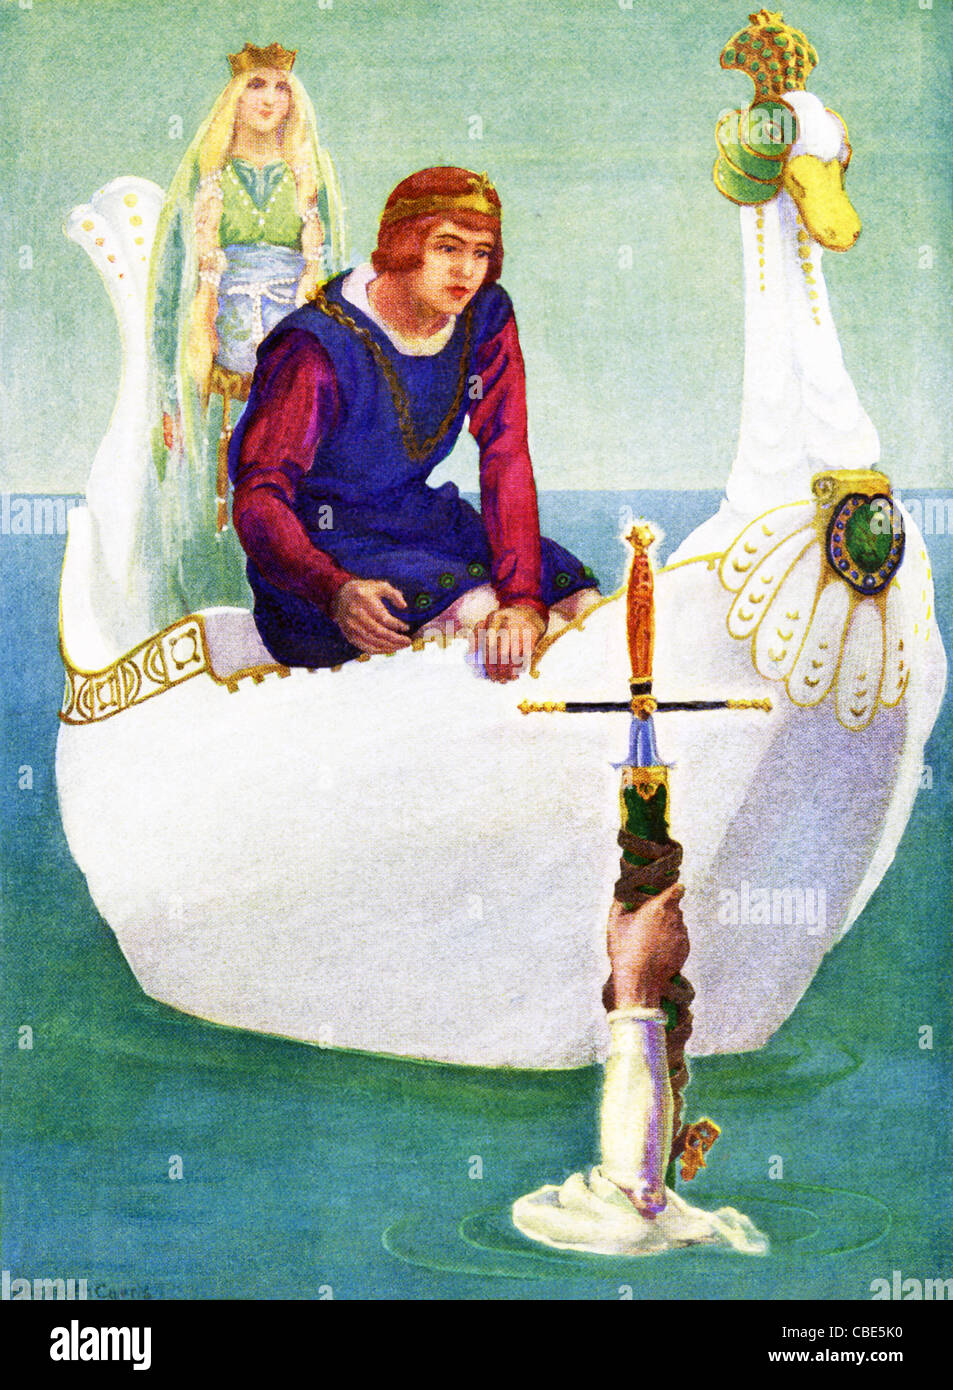 La leggenda dice che Re Artù di Bretagna aveva la sua spada, noto come Excalibur, dato a lui dalla signora del lago. Foto Stock